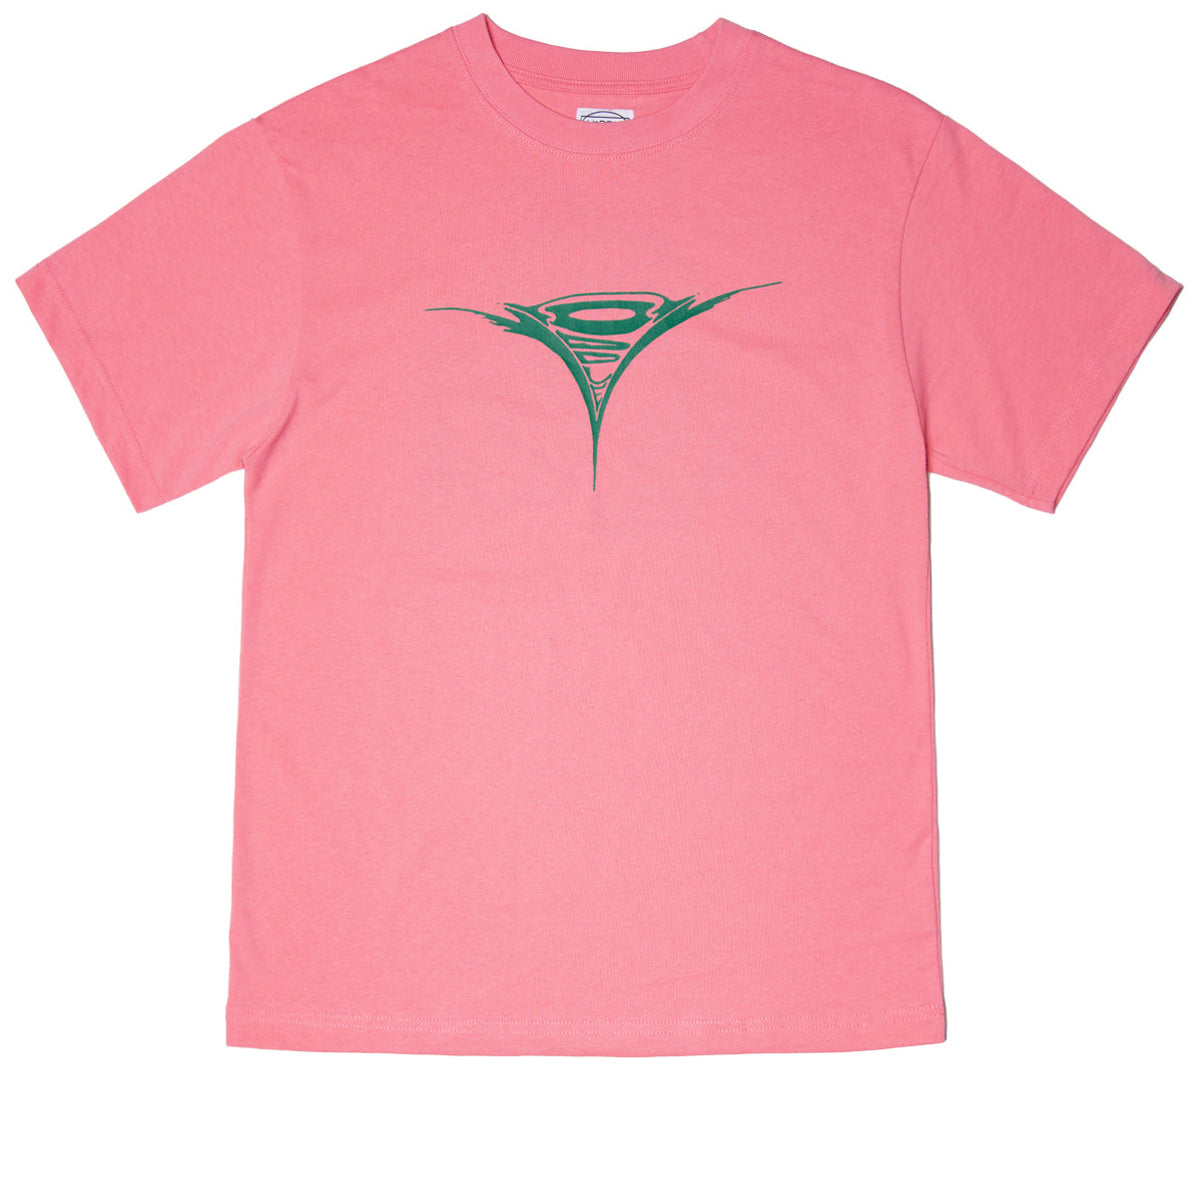 Hoddle Turbo Dolphin Logo T-Shirt - Pink image 1